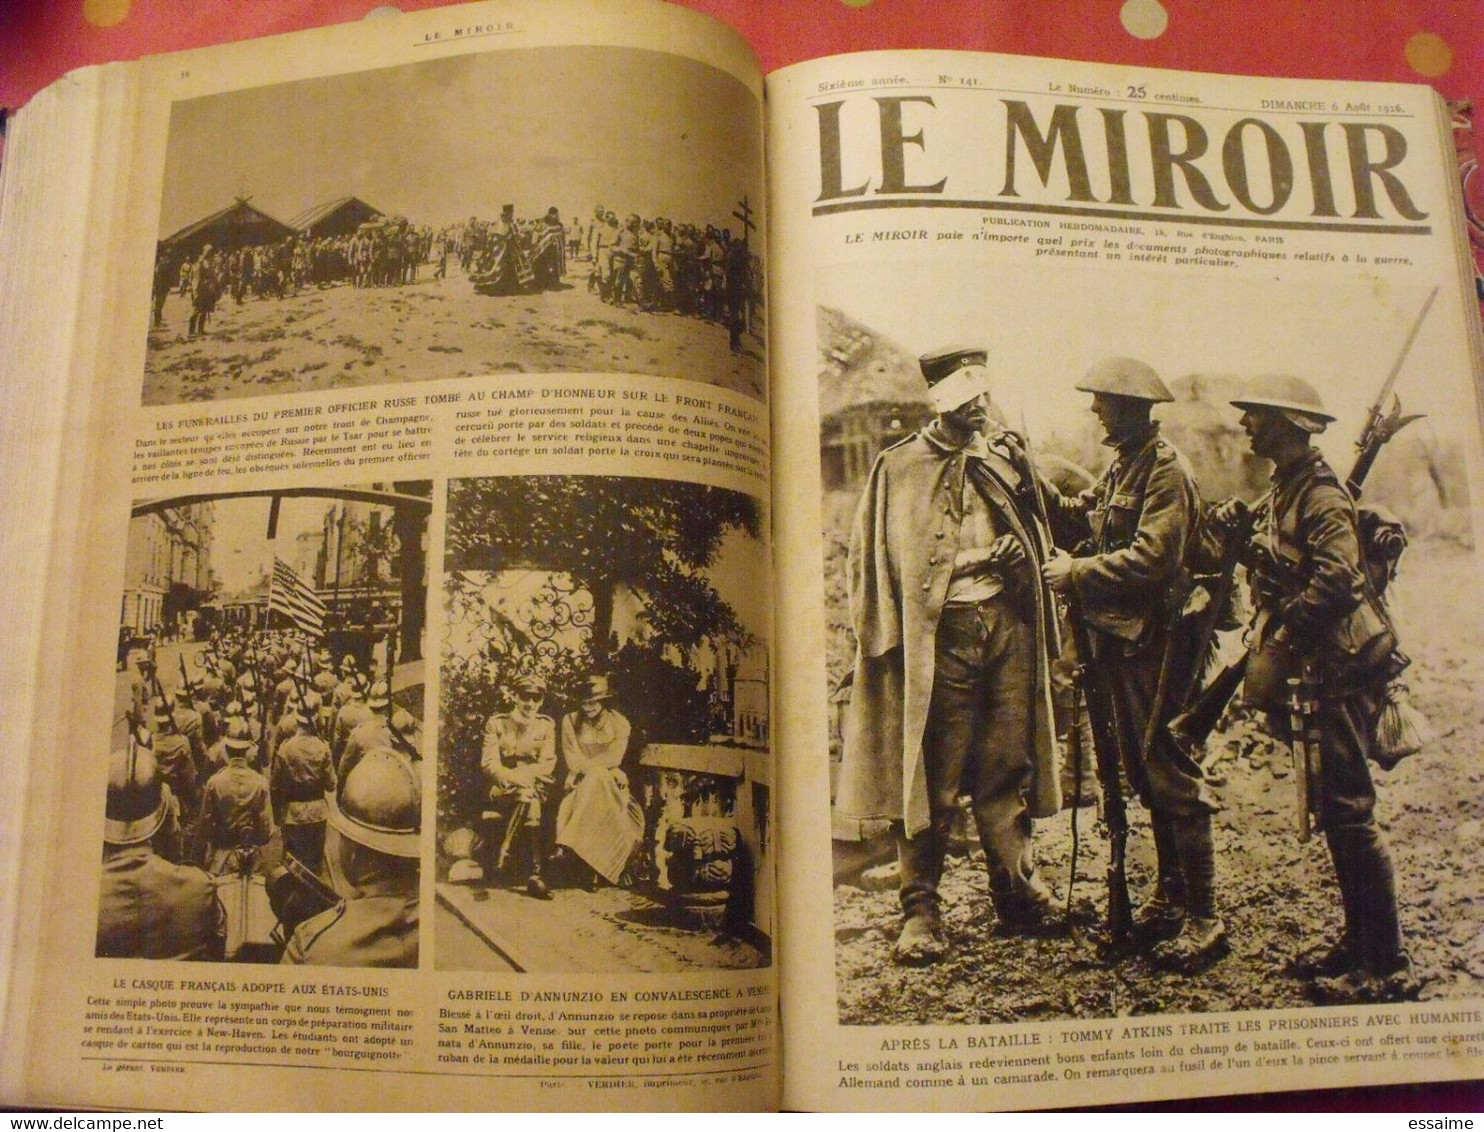 Le miroir recueil reliure 1916 (année complète 53 n° ). guerre 14-18 très illustrée, documentée. zeppelin avion soldats